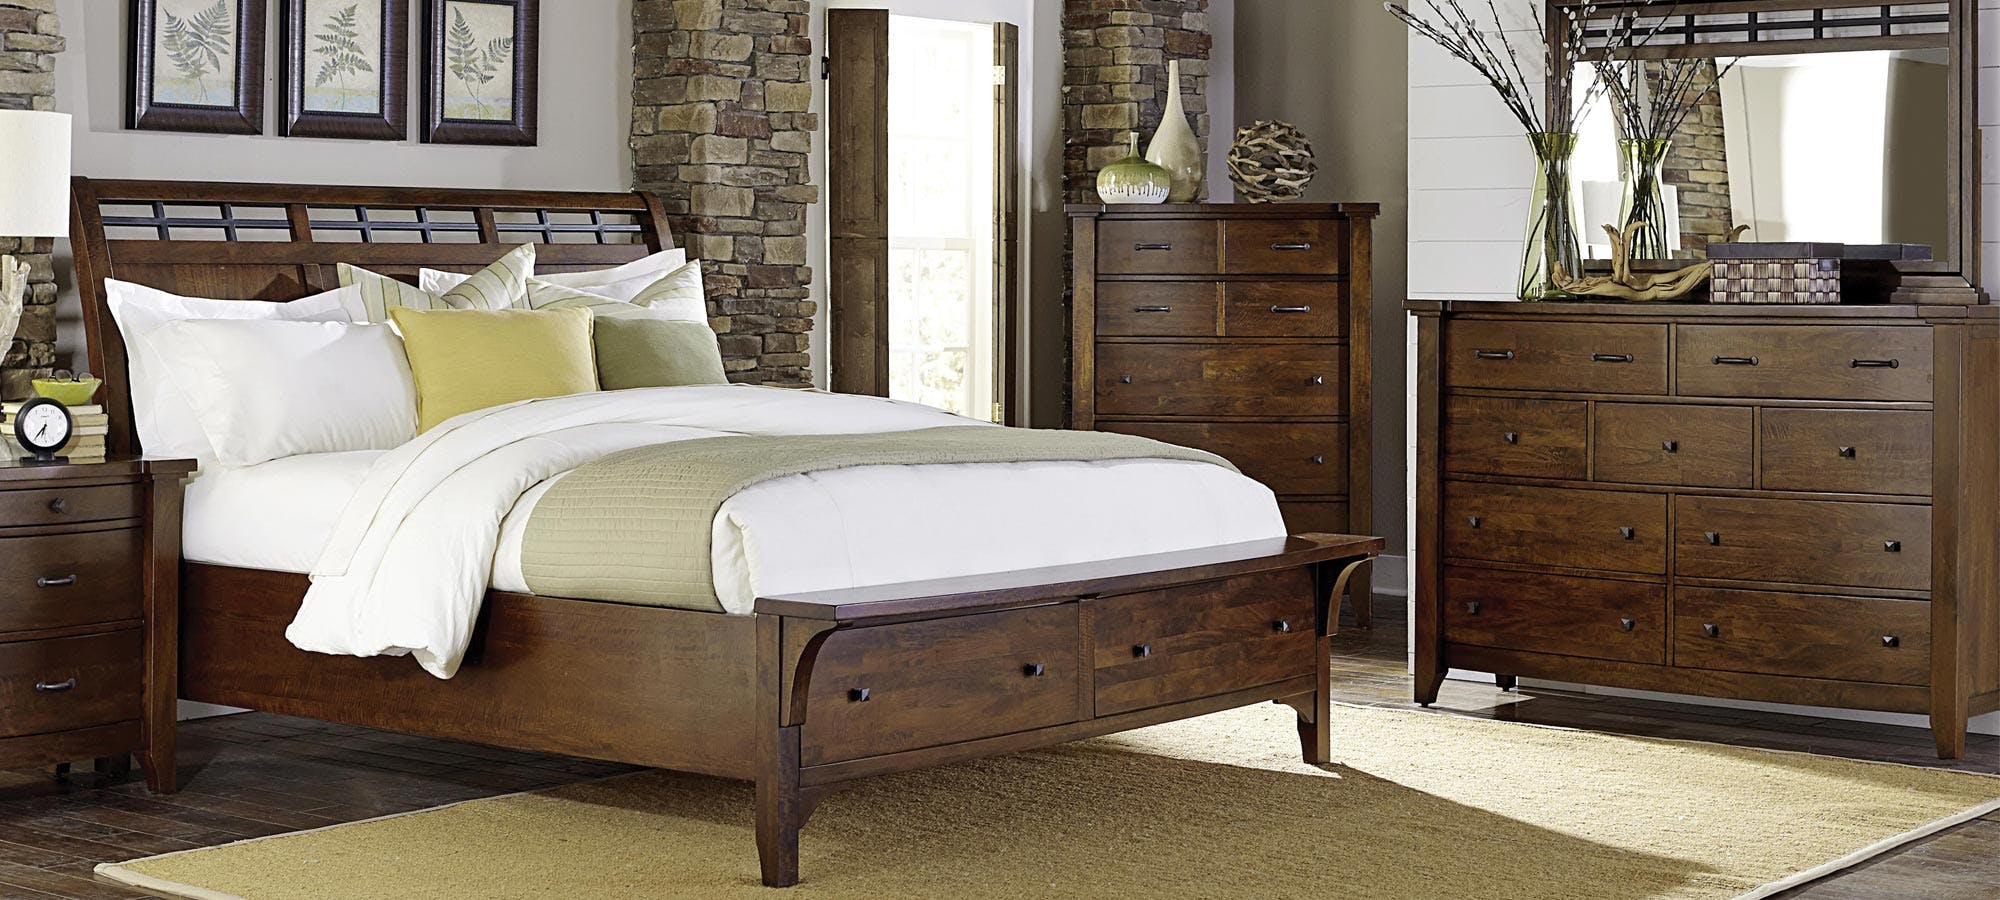 best furniture and mattress dayton